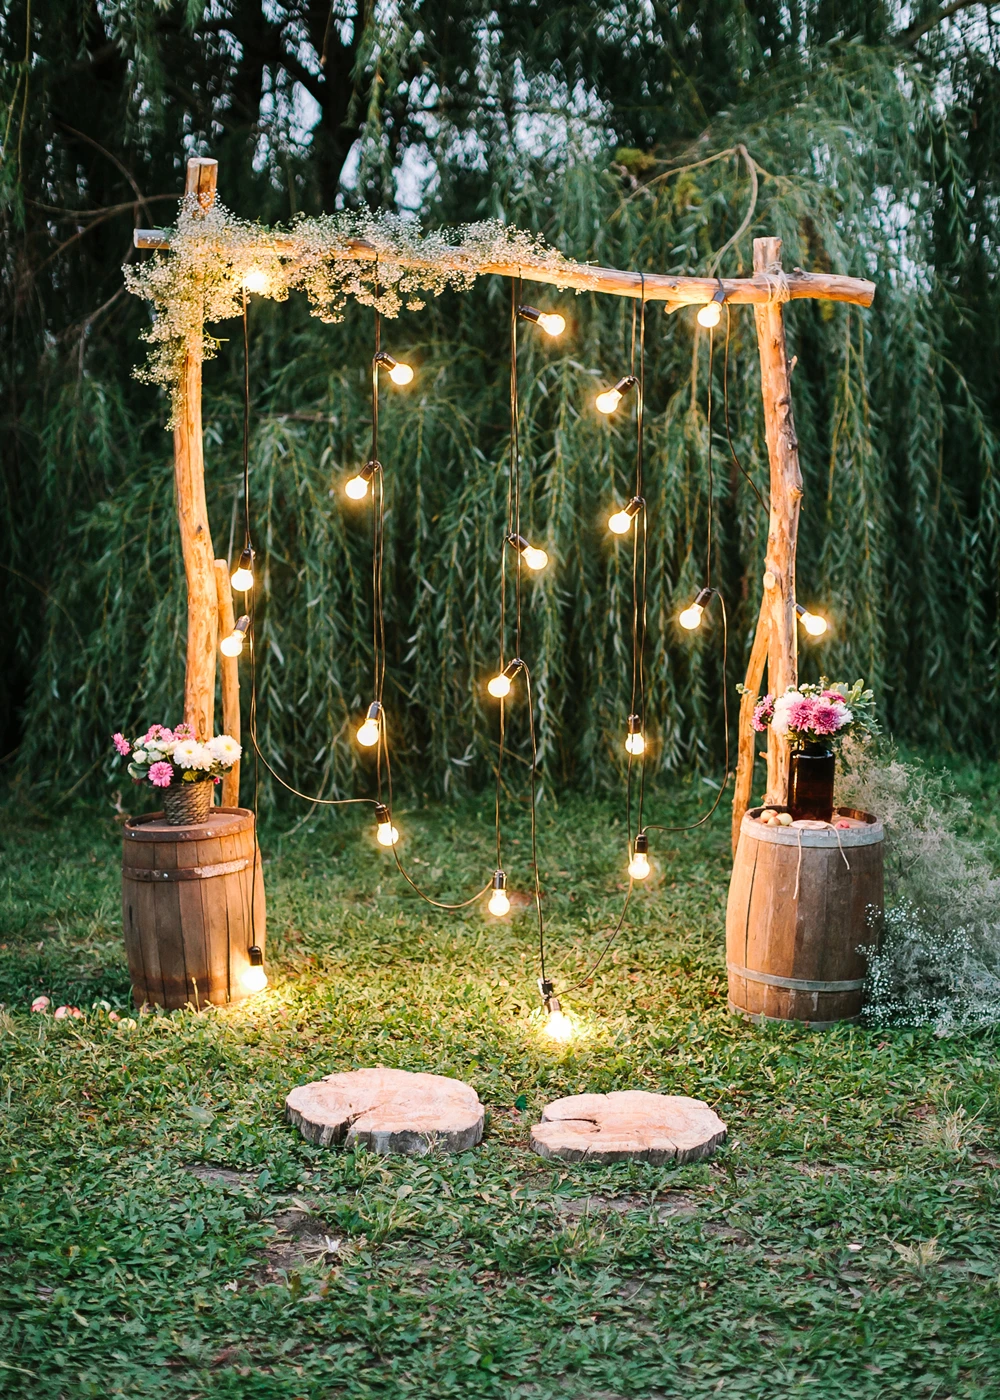 Светильники Lyavshi с изображением гирлянды для ворота Фотофон свадебной съемки в